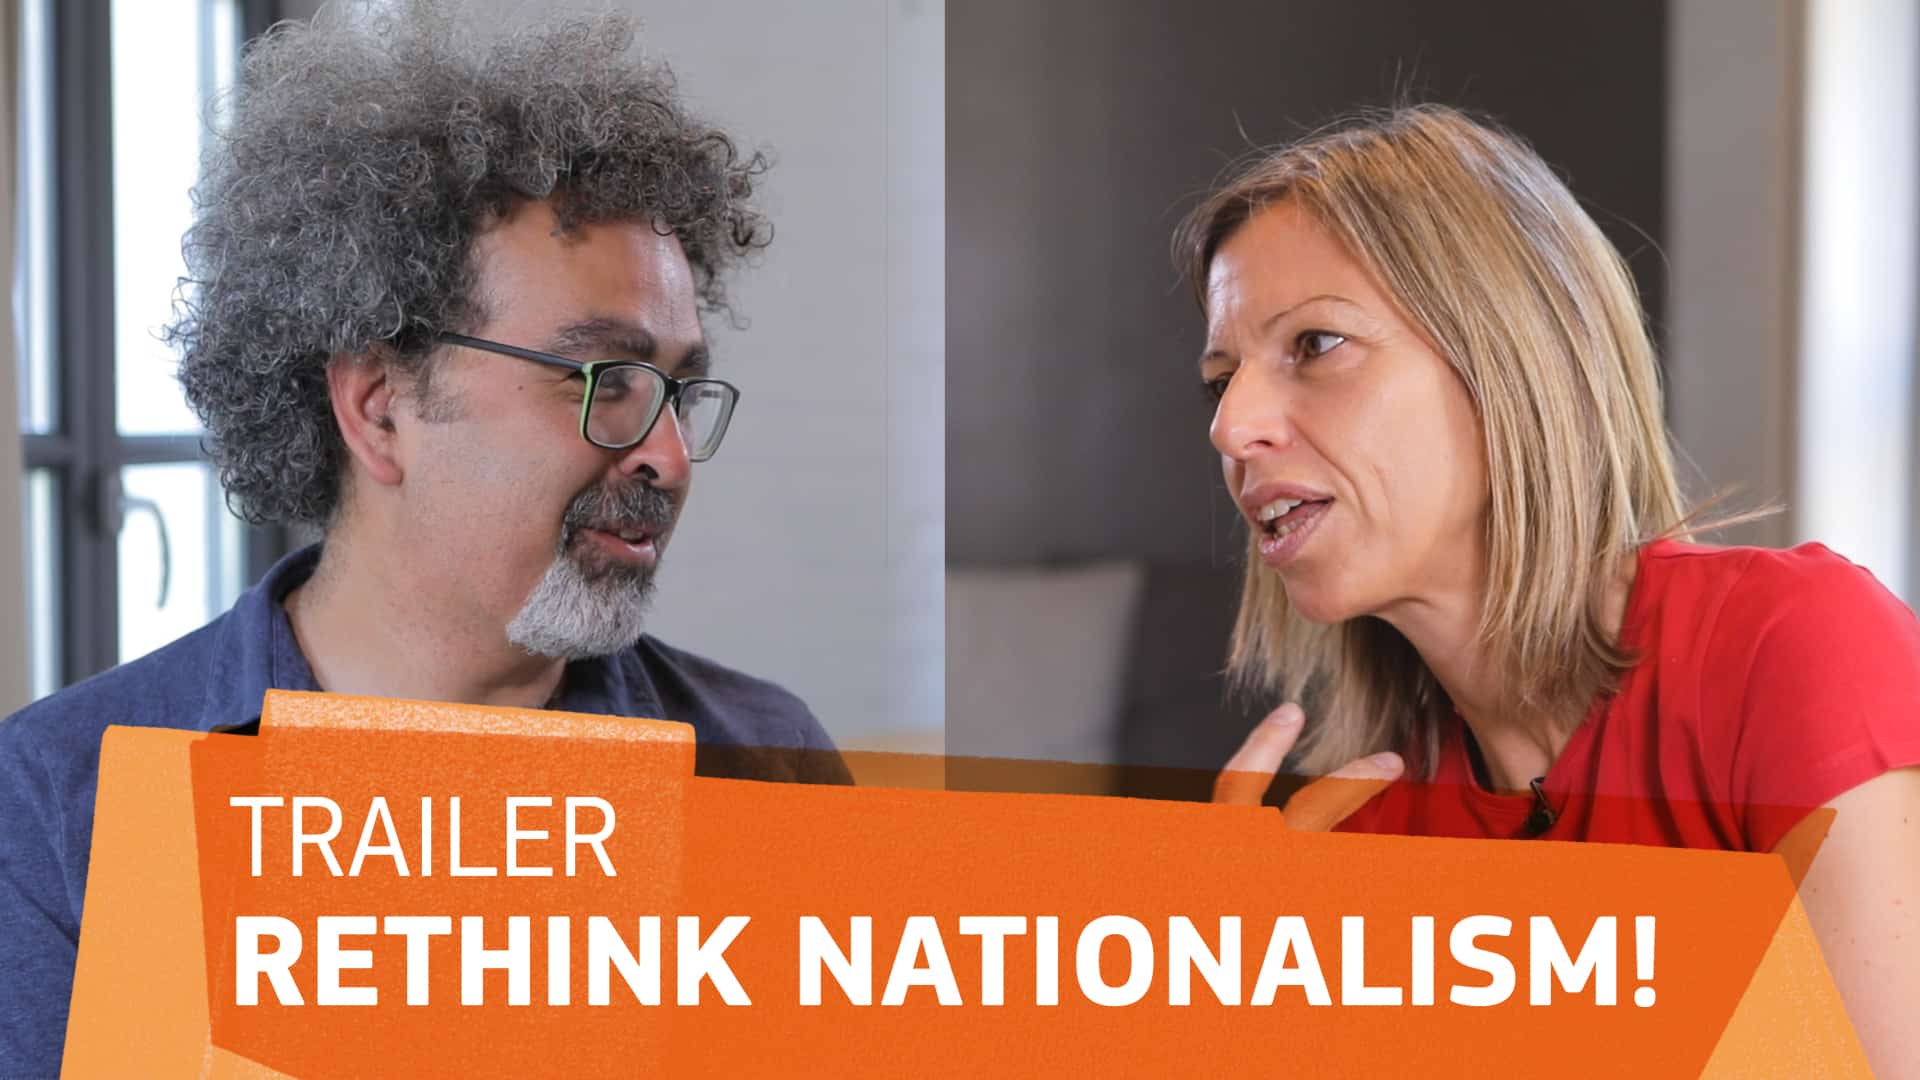 Nando Sigona und Anna Triandafyllidou mit Textüberlagerung 'Trailer Rethink Nationalism!